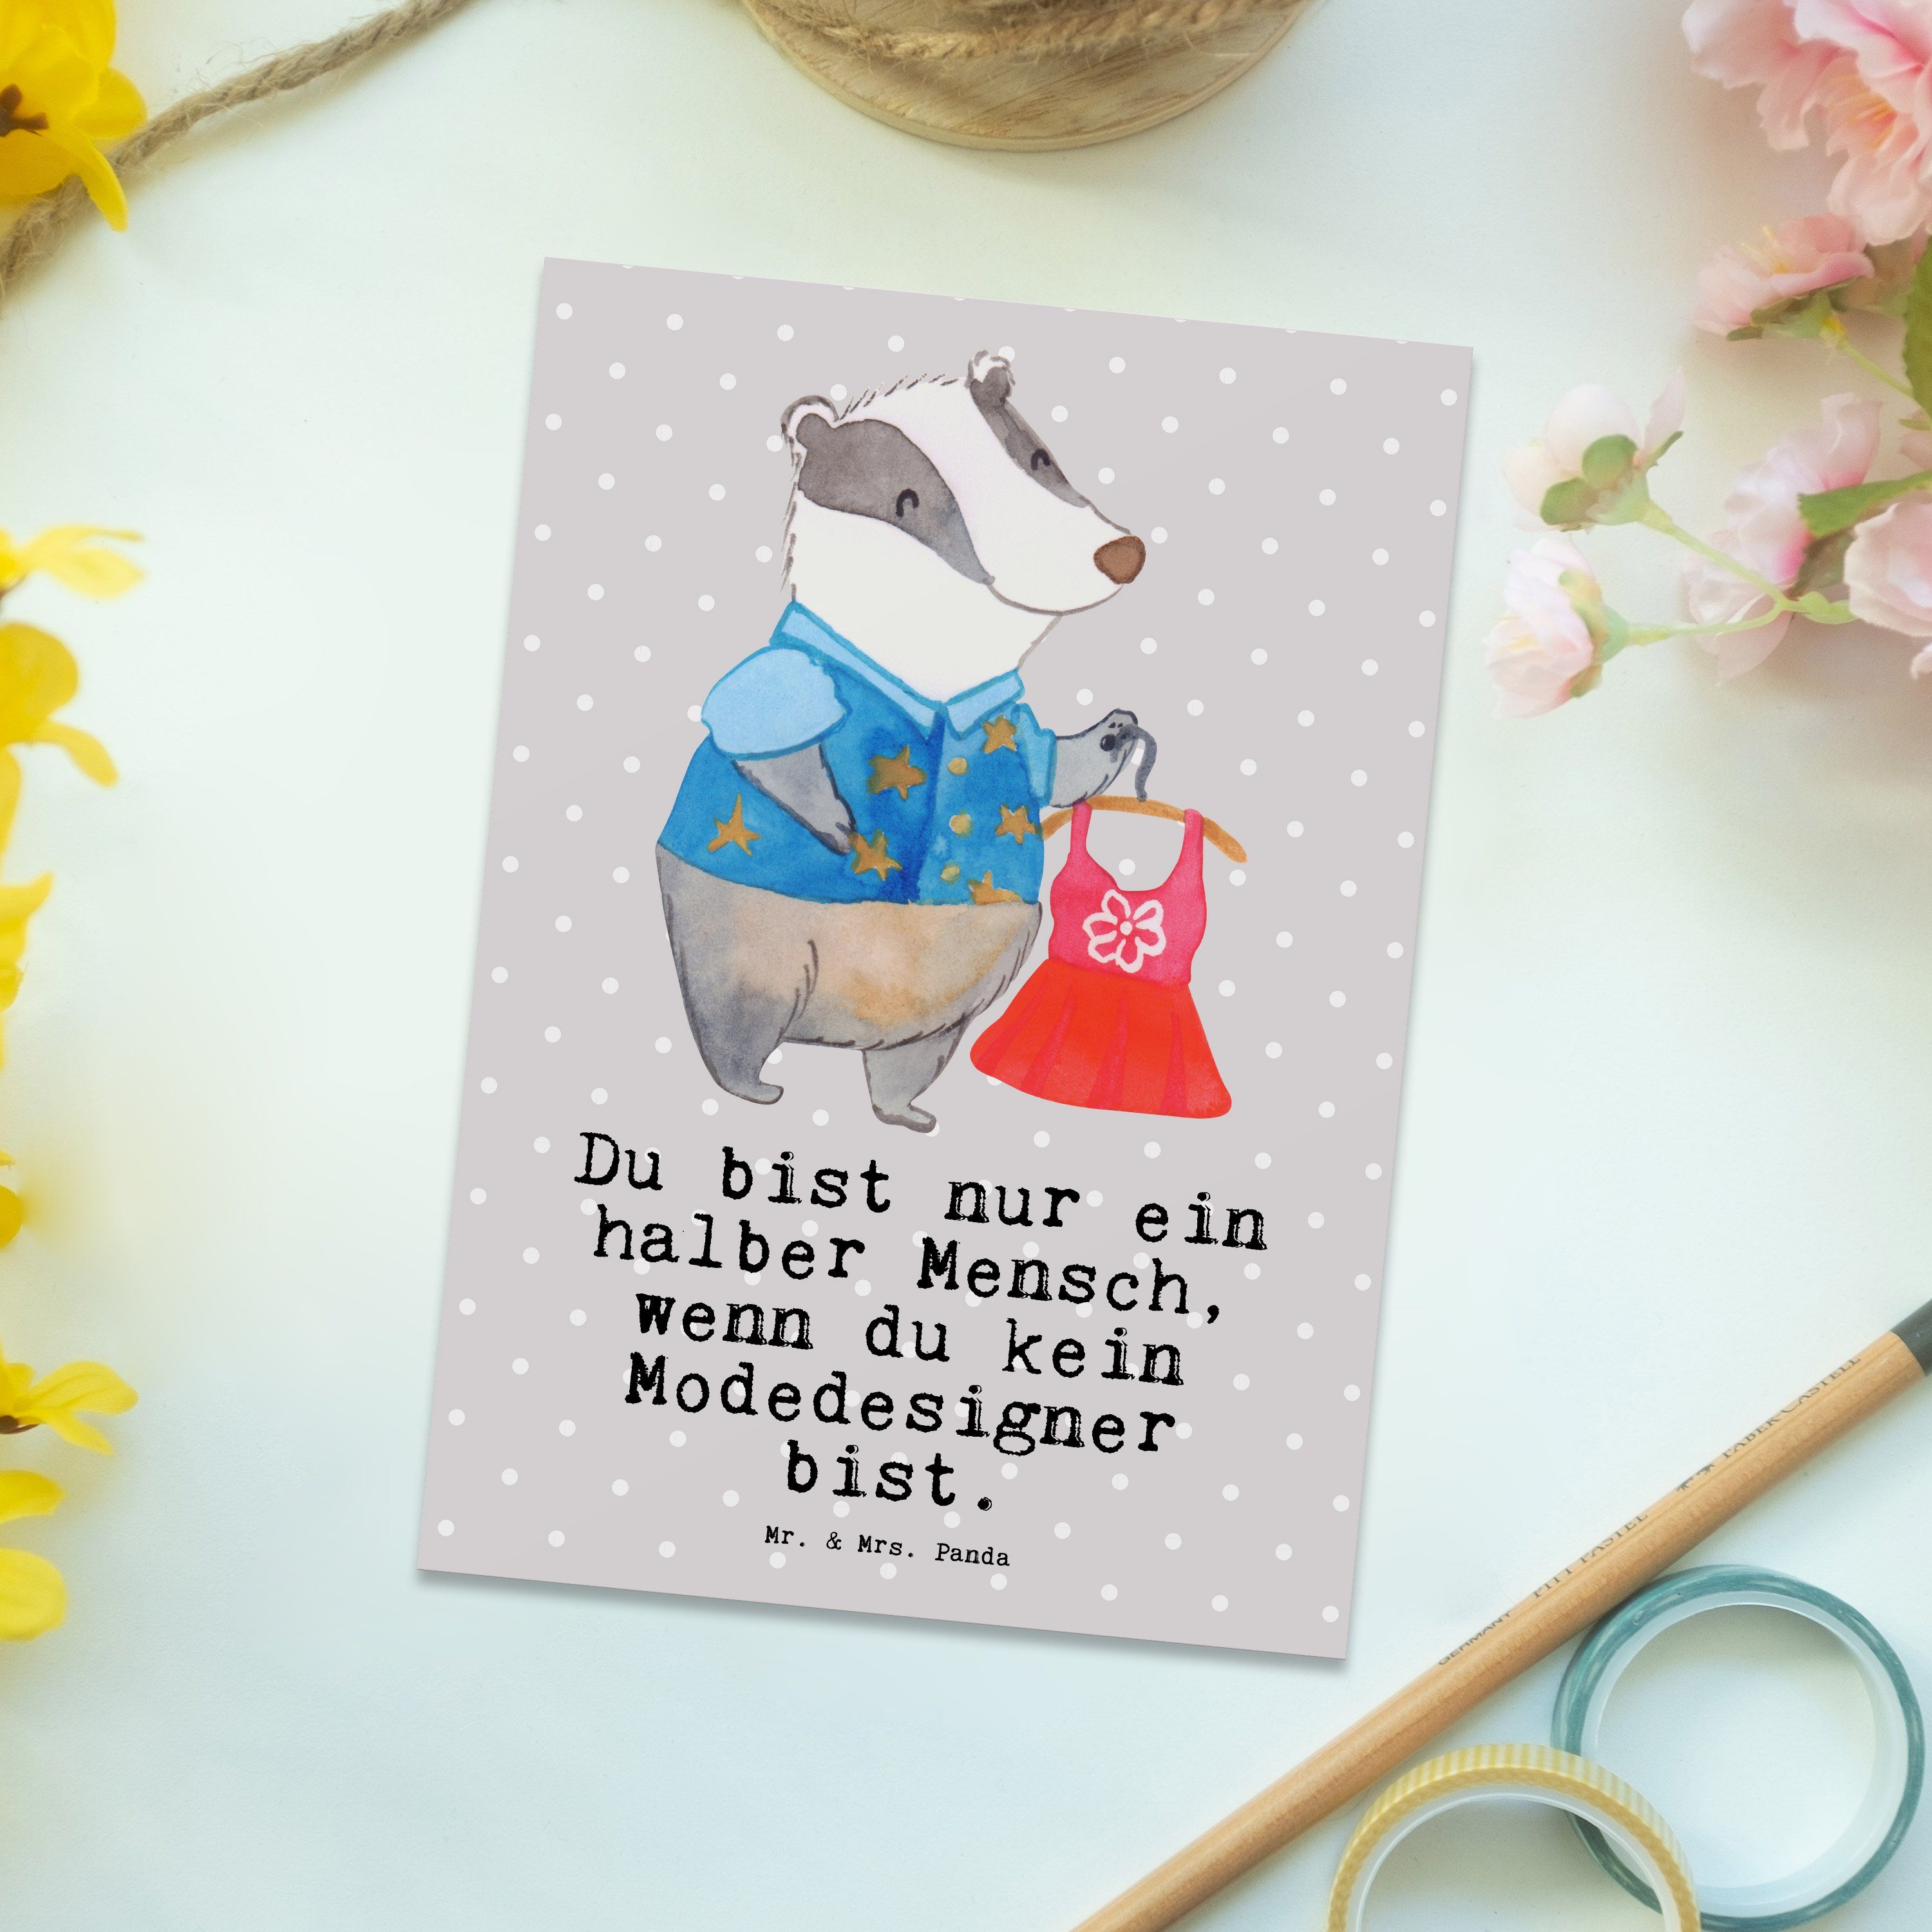 Mr. & Mrs. Herz Panda Fashio Modeschöpfer, Geschenk, - mit Modedesigner Postkarte - Grau Pastell